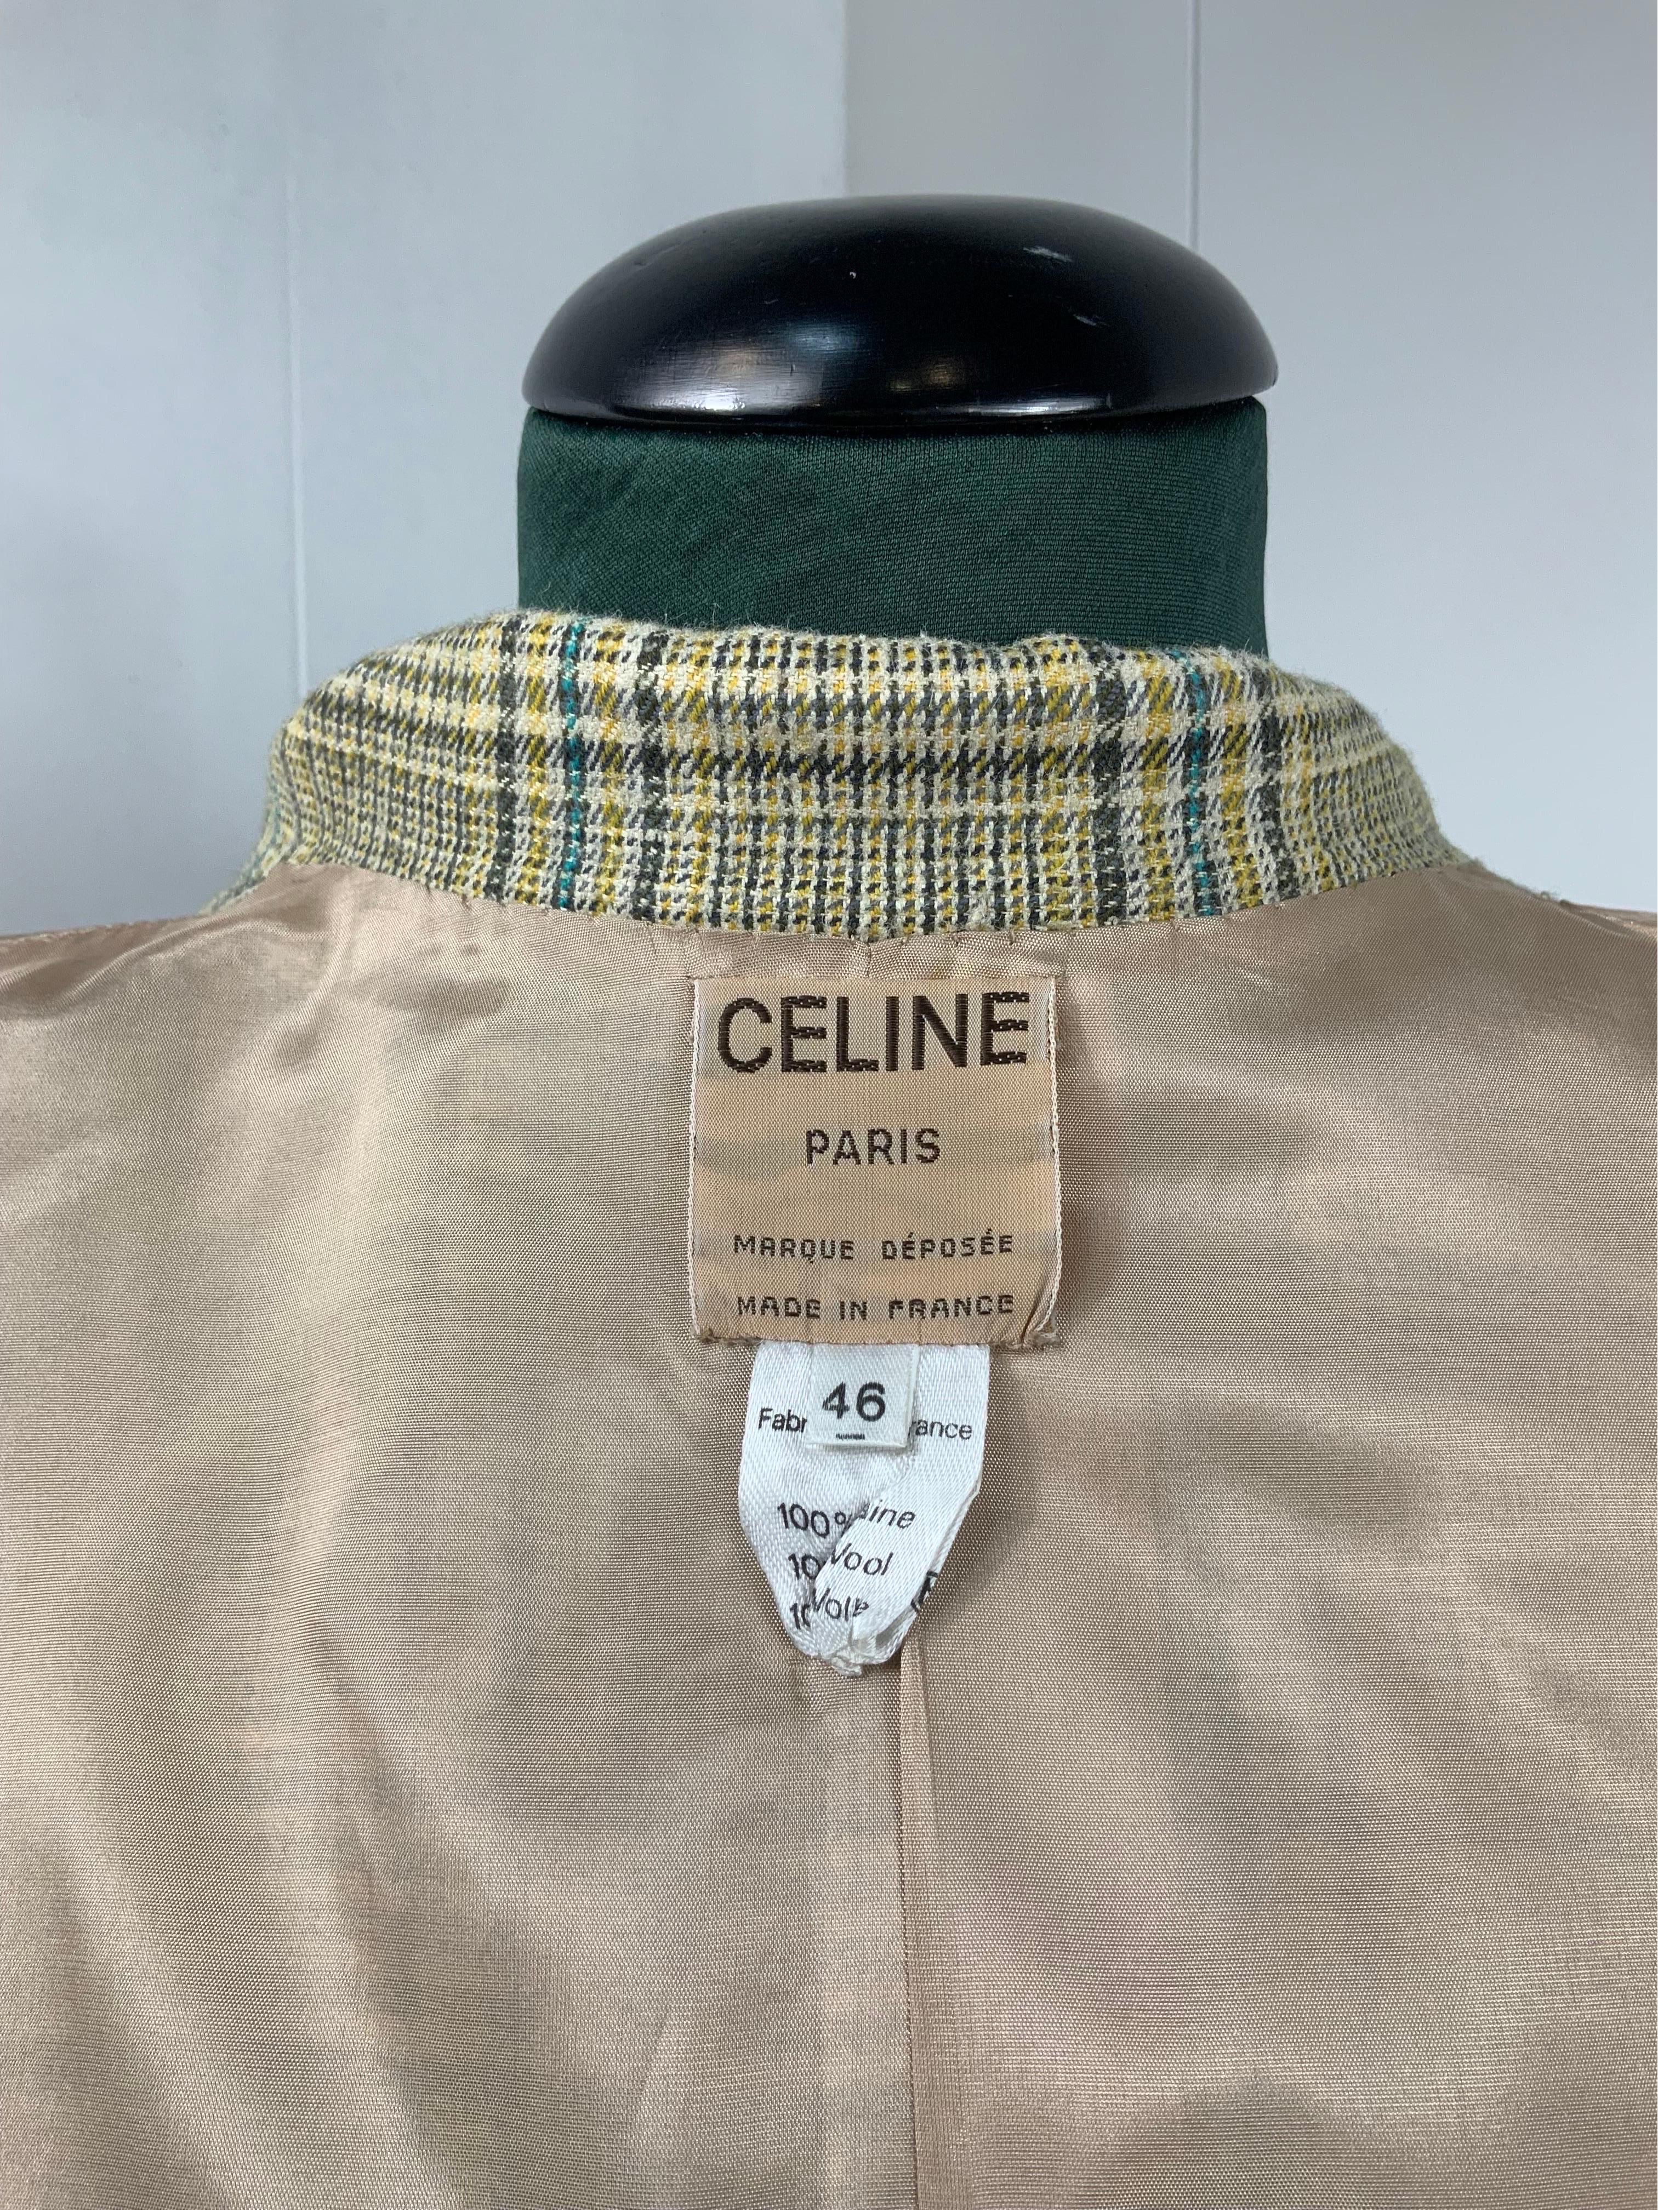 Celine vintage green jacket and skirt Suit 1